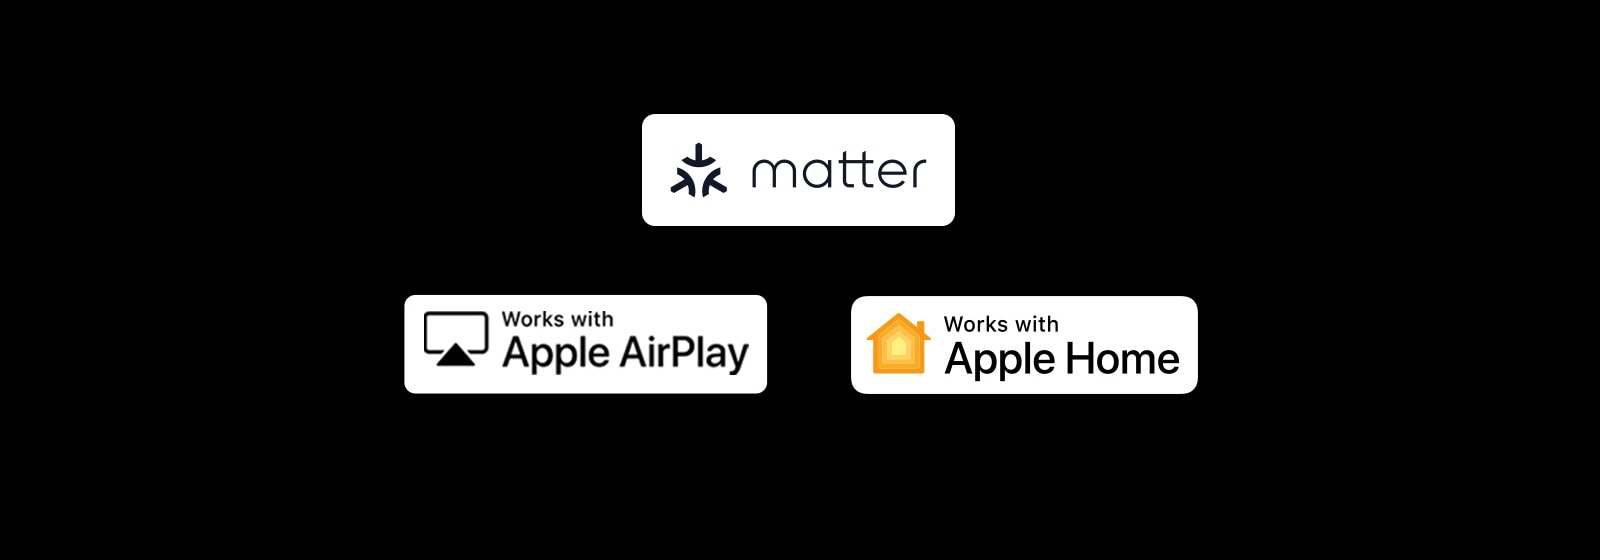 شعار alexa built-in شعار "works with Apple AirPlay" (يعمل بميزة Apple AirPlay" شعار "works with Apple Home" (يعمل بميزة Apple Home"